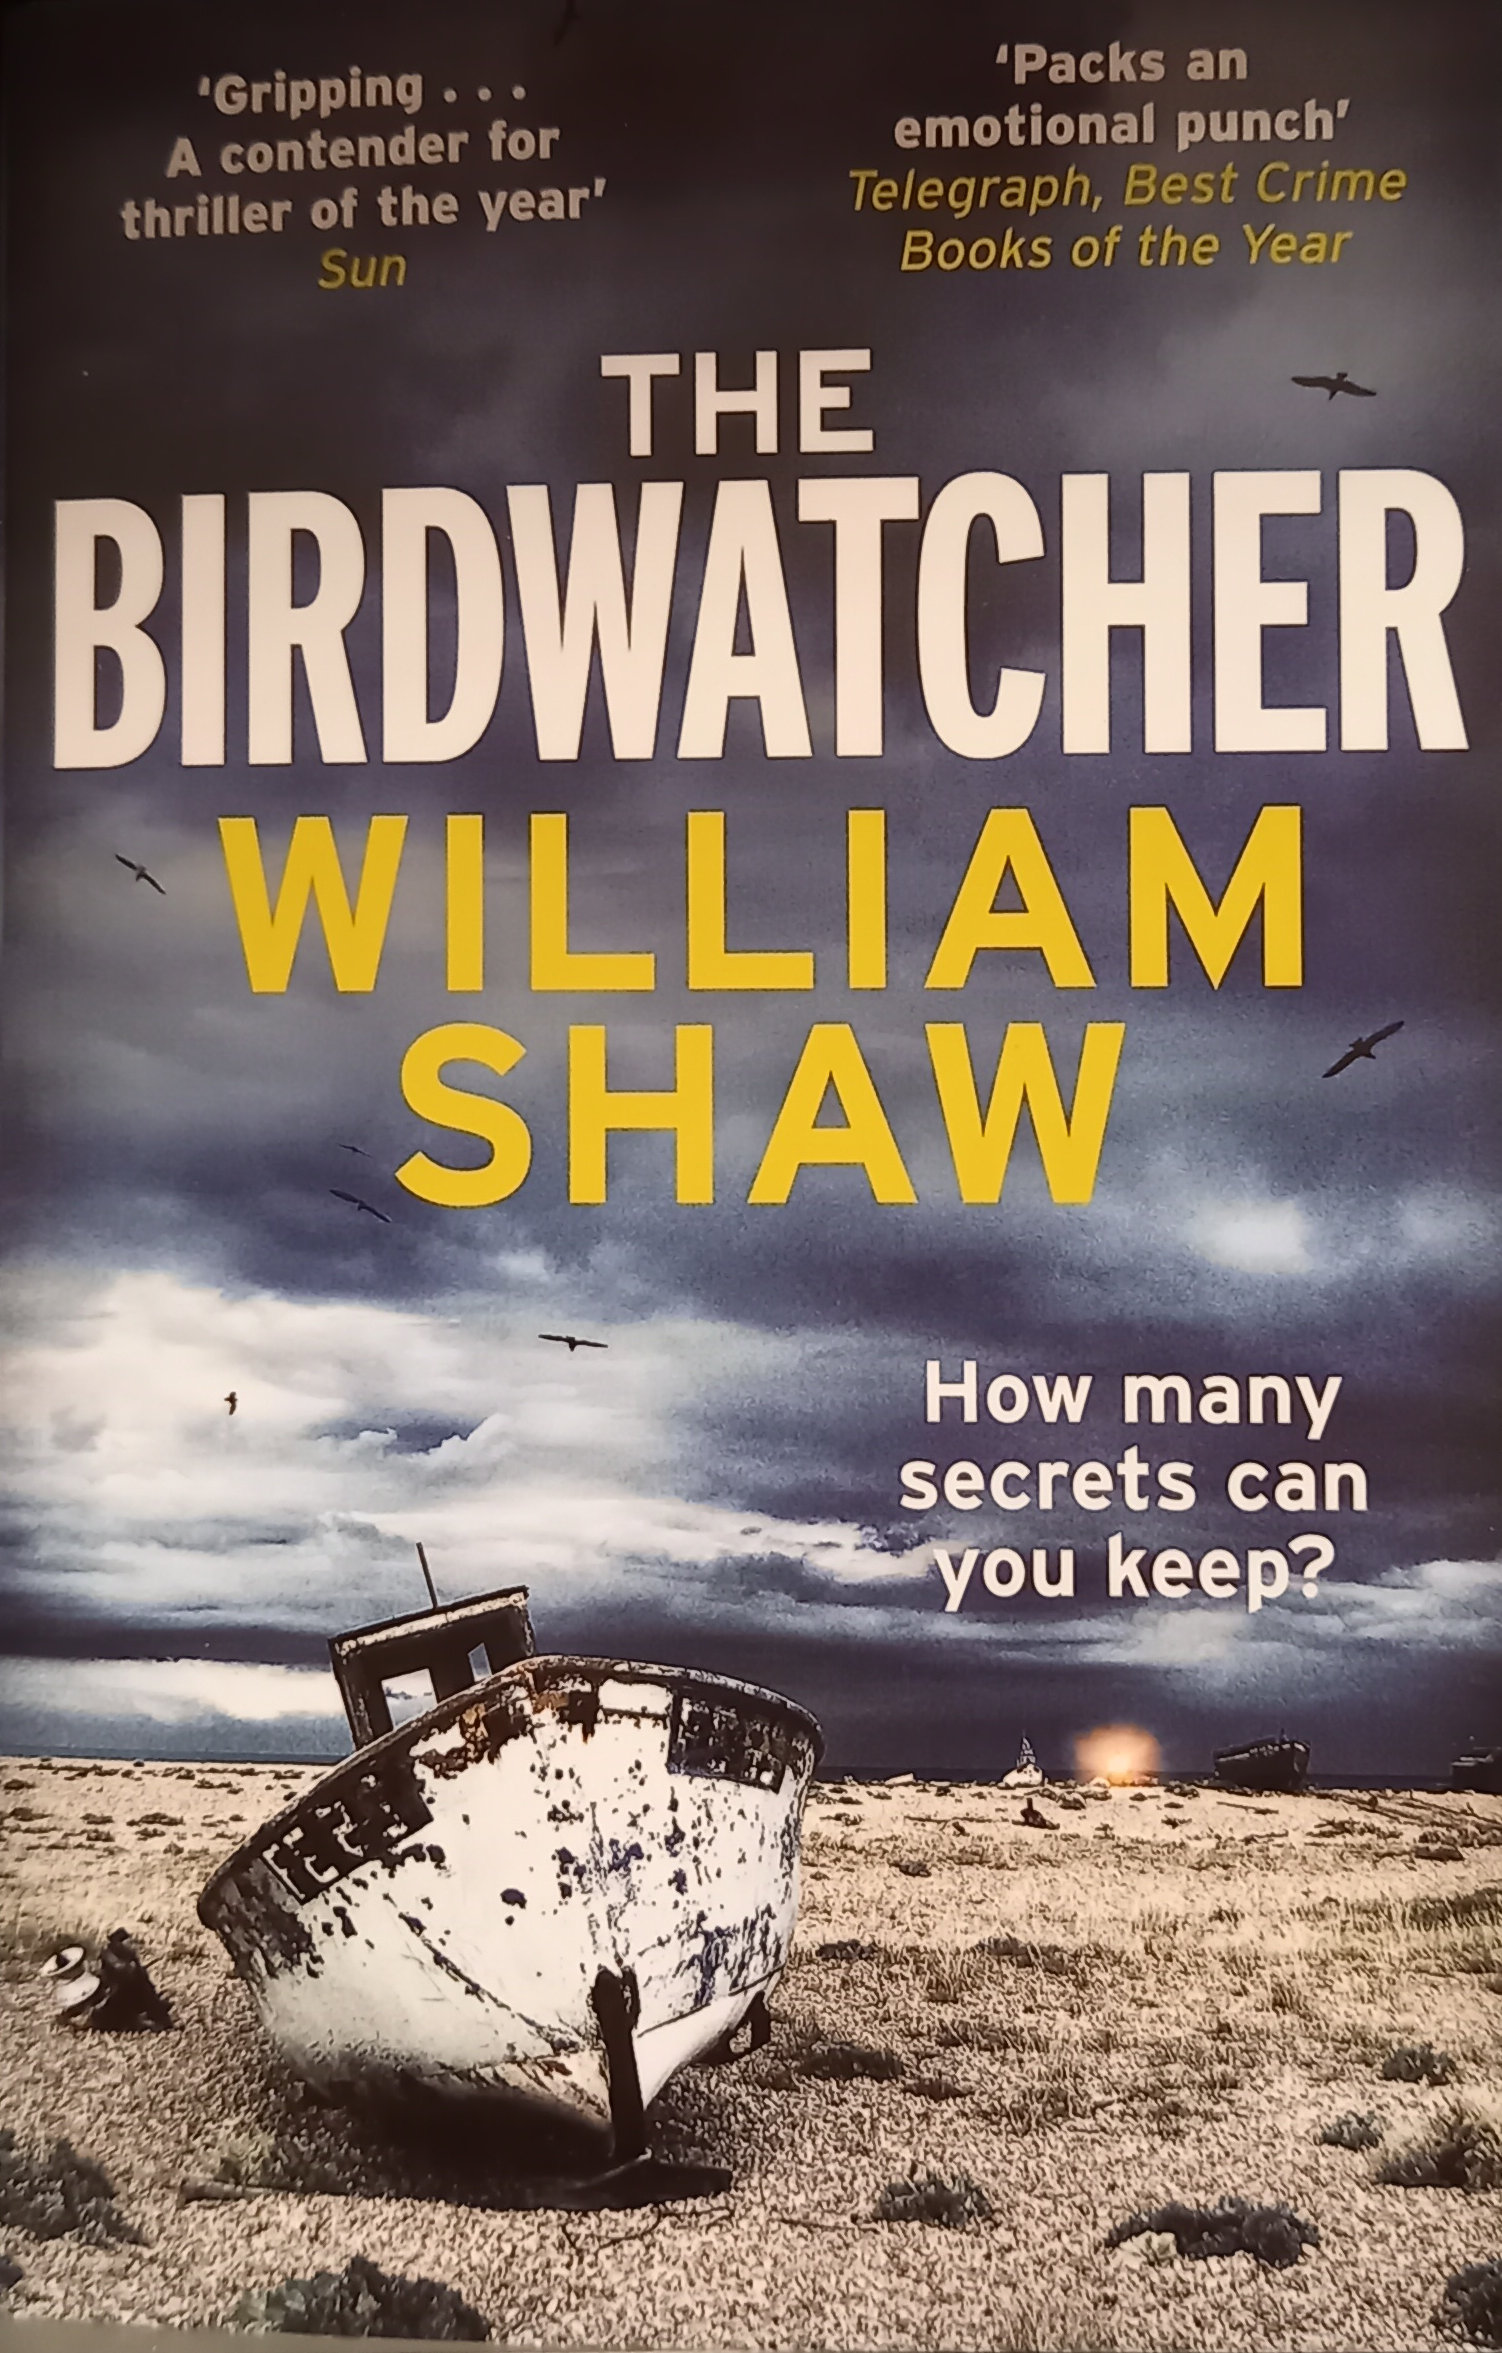 The Birdwatcher William Shaw